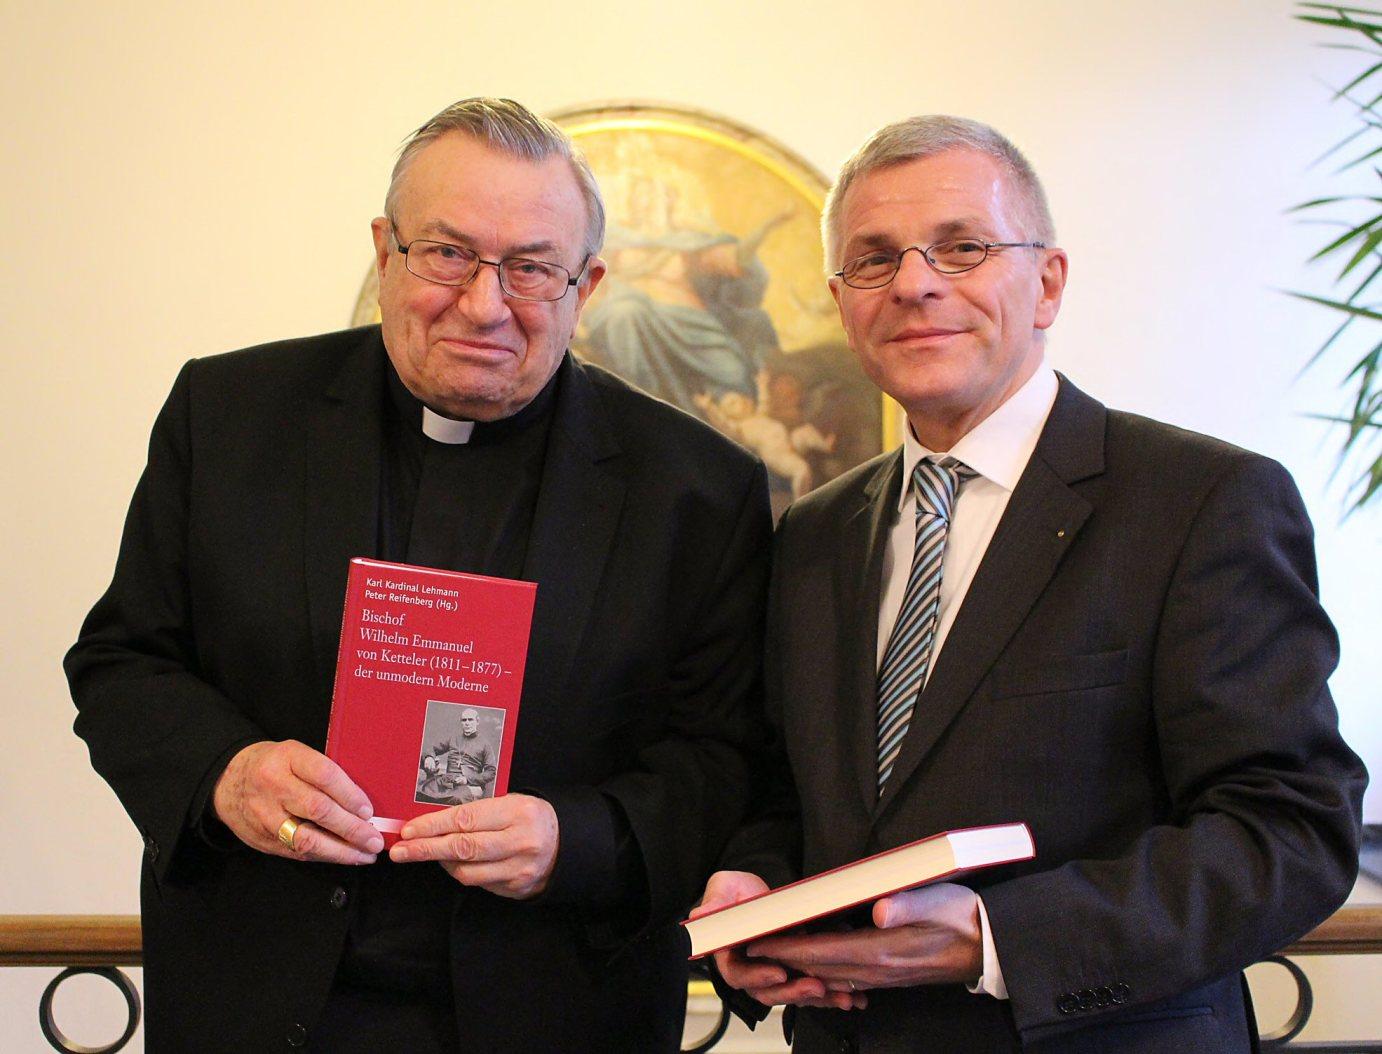 Mainz, 21. Januar 2014: Kardinal Karl Lehmann und Professor Dr. Peter Reifenberg (rechts) präsentierten das neu erschienene Buch zu Bischof Ketteler.